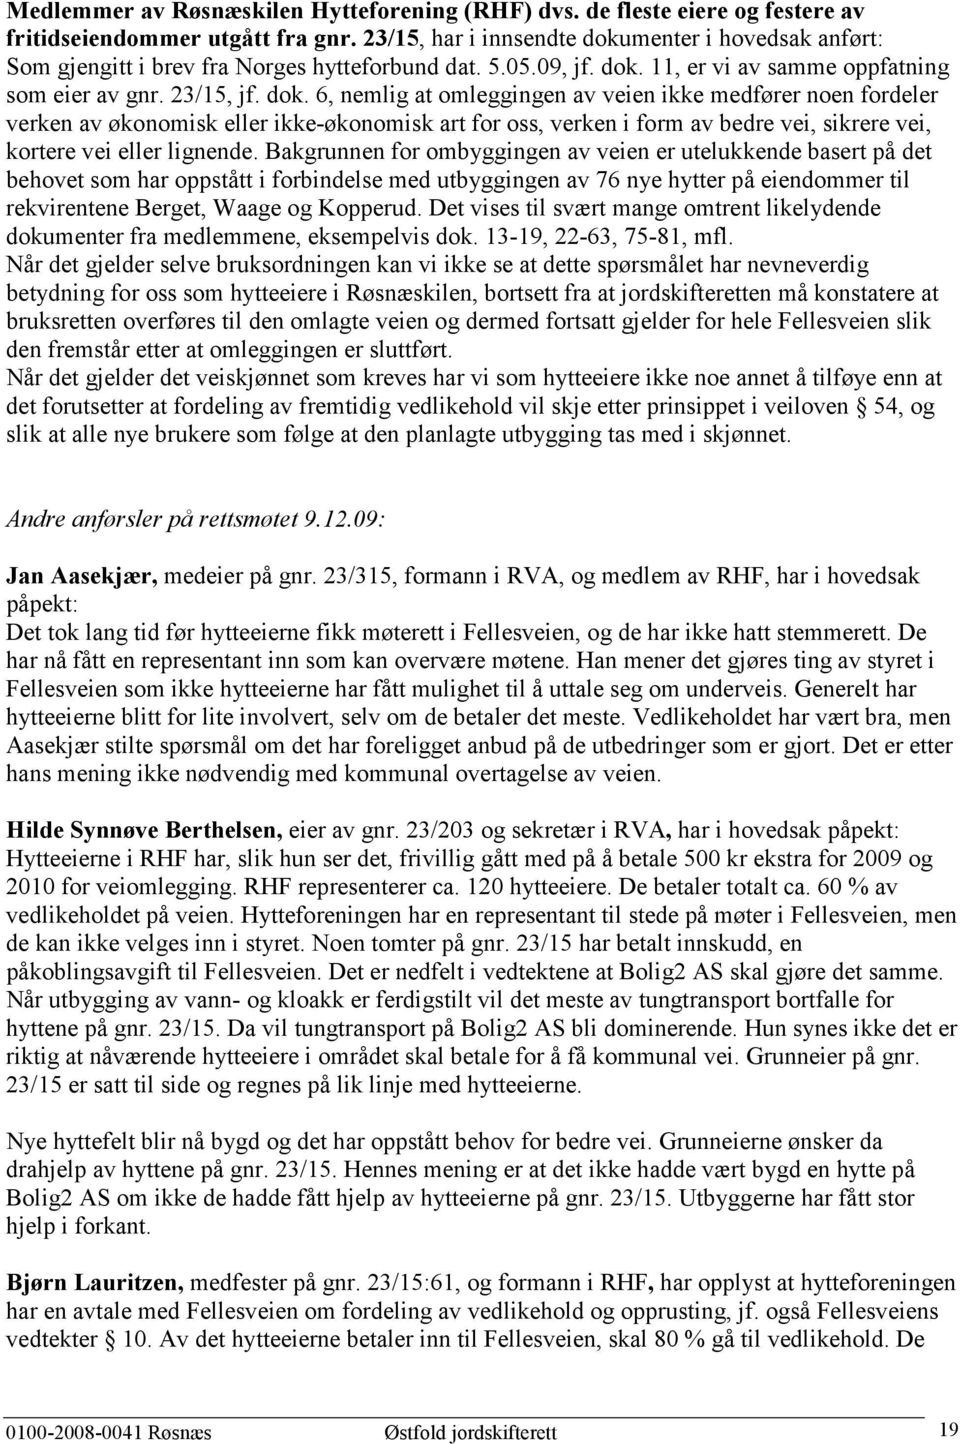 menter i hovedsak anført: Som gjengitt i brev fra Norges hytteforbund dat. 5.05.09, jf. dok.